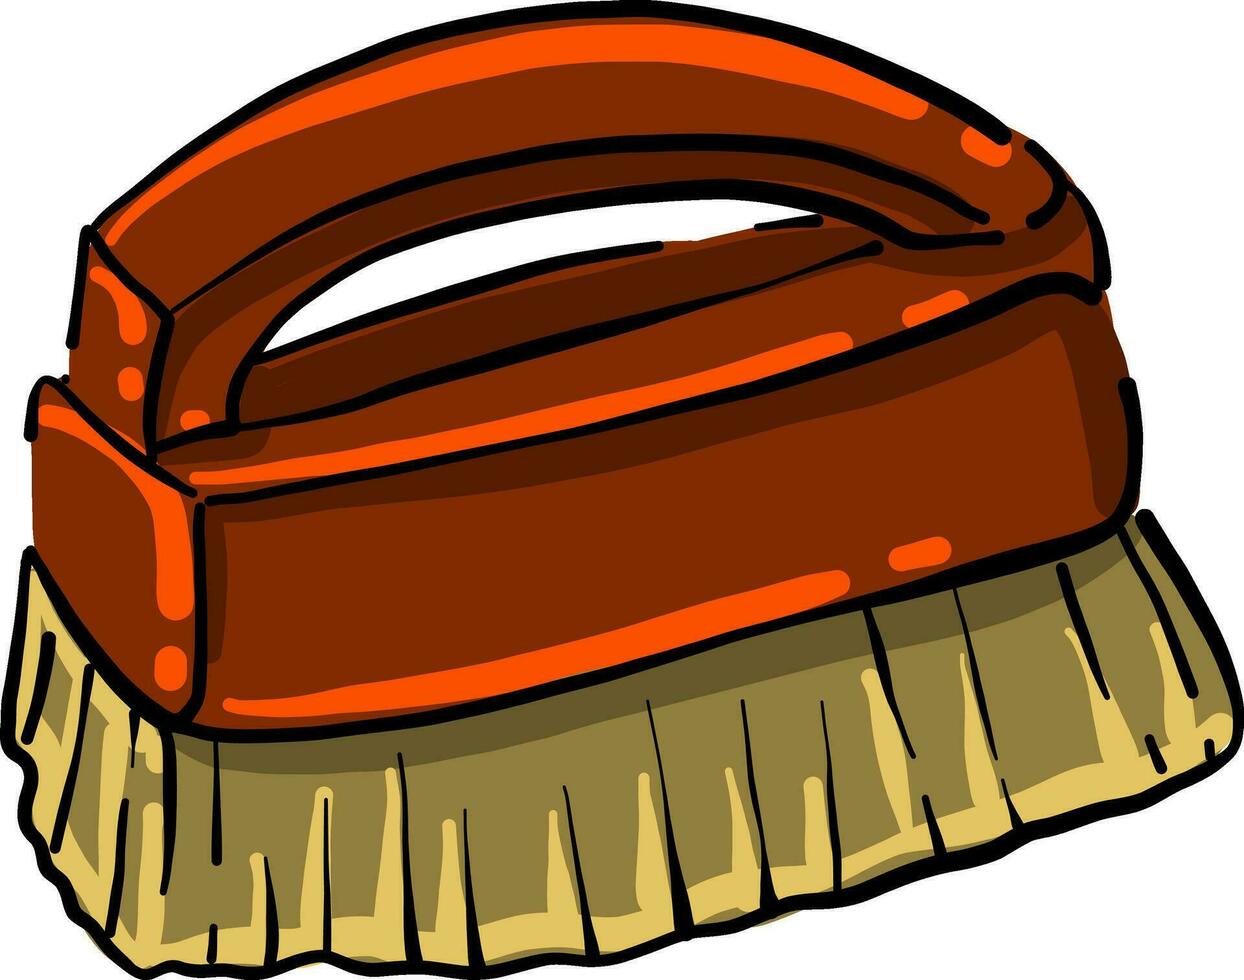 Brush for floor cleaning, illustration, vector on white background